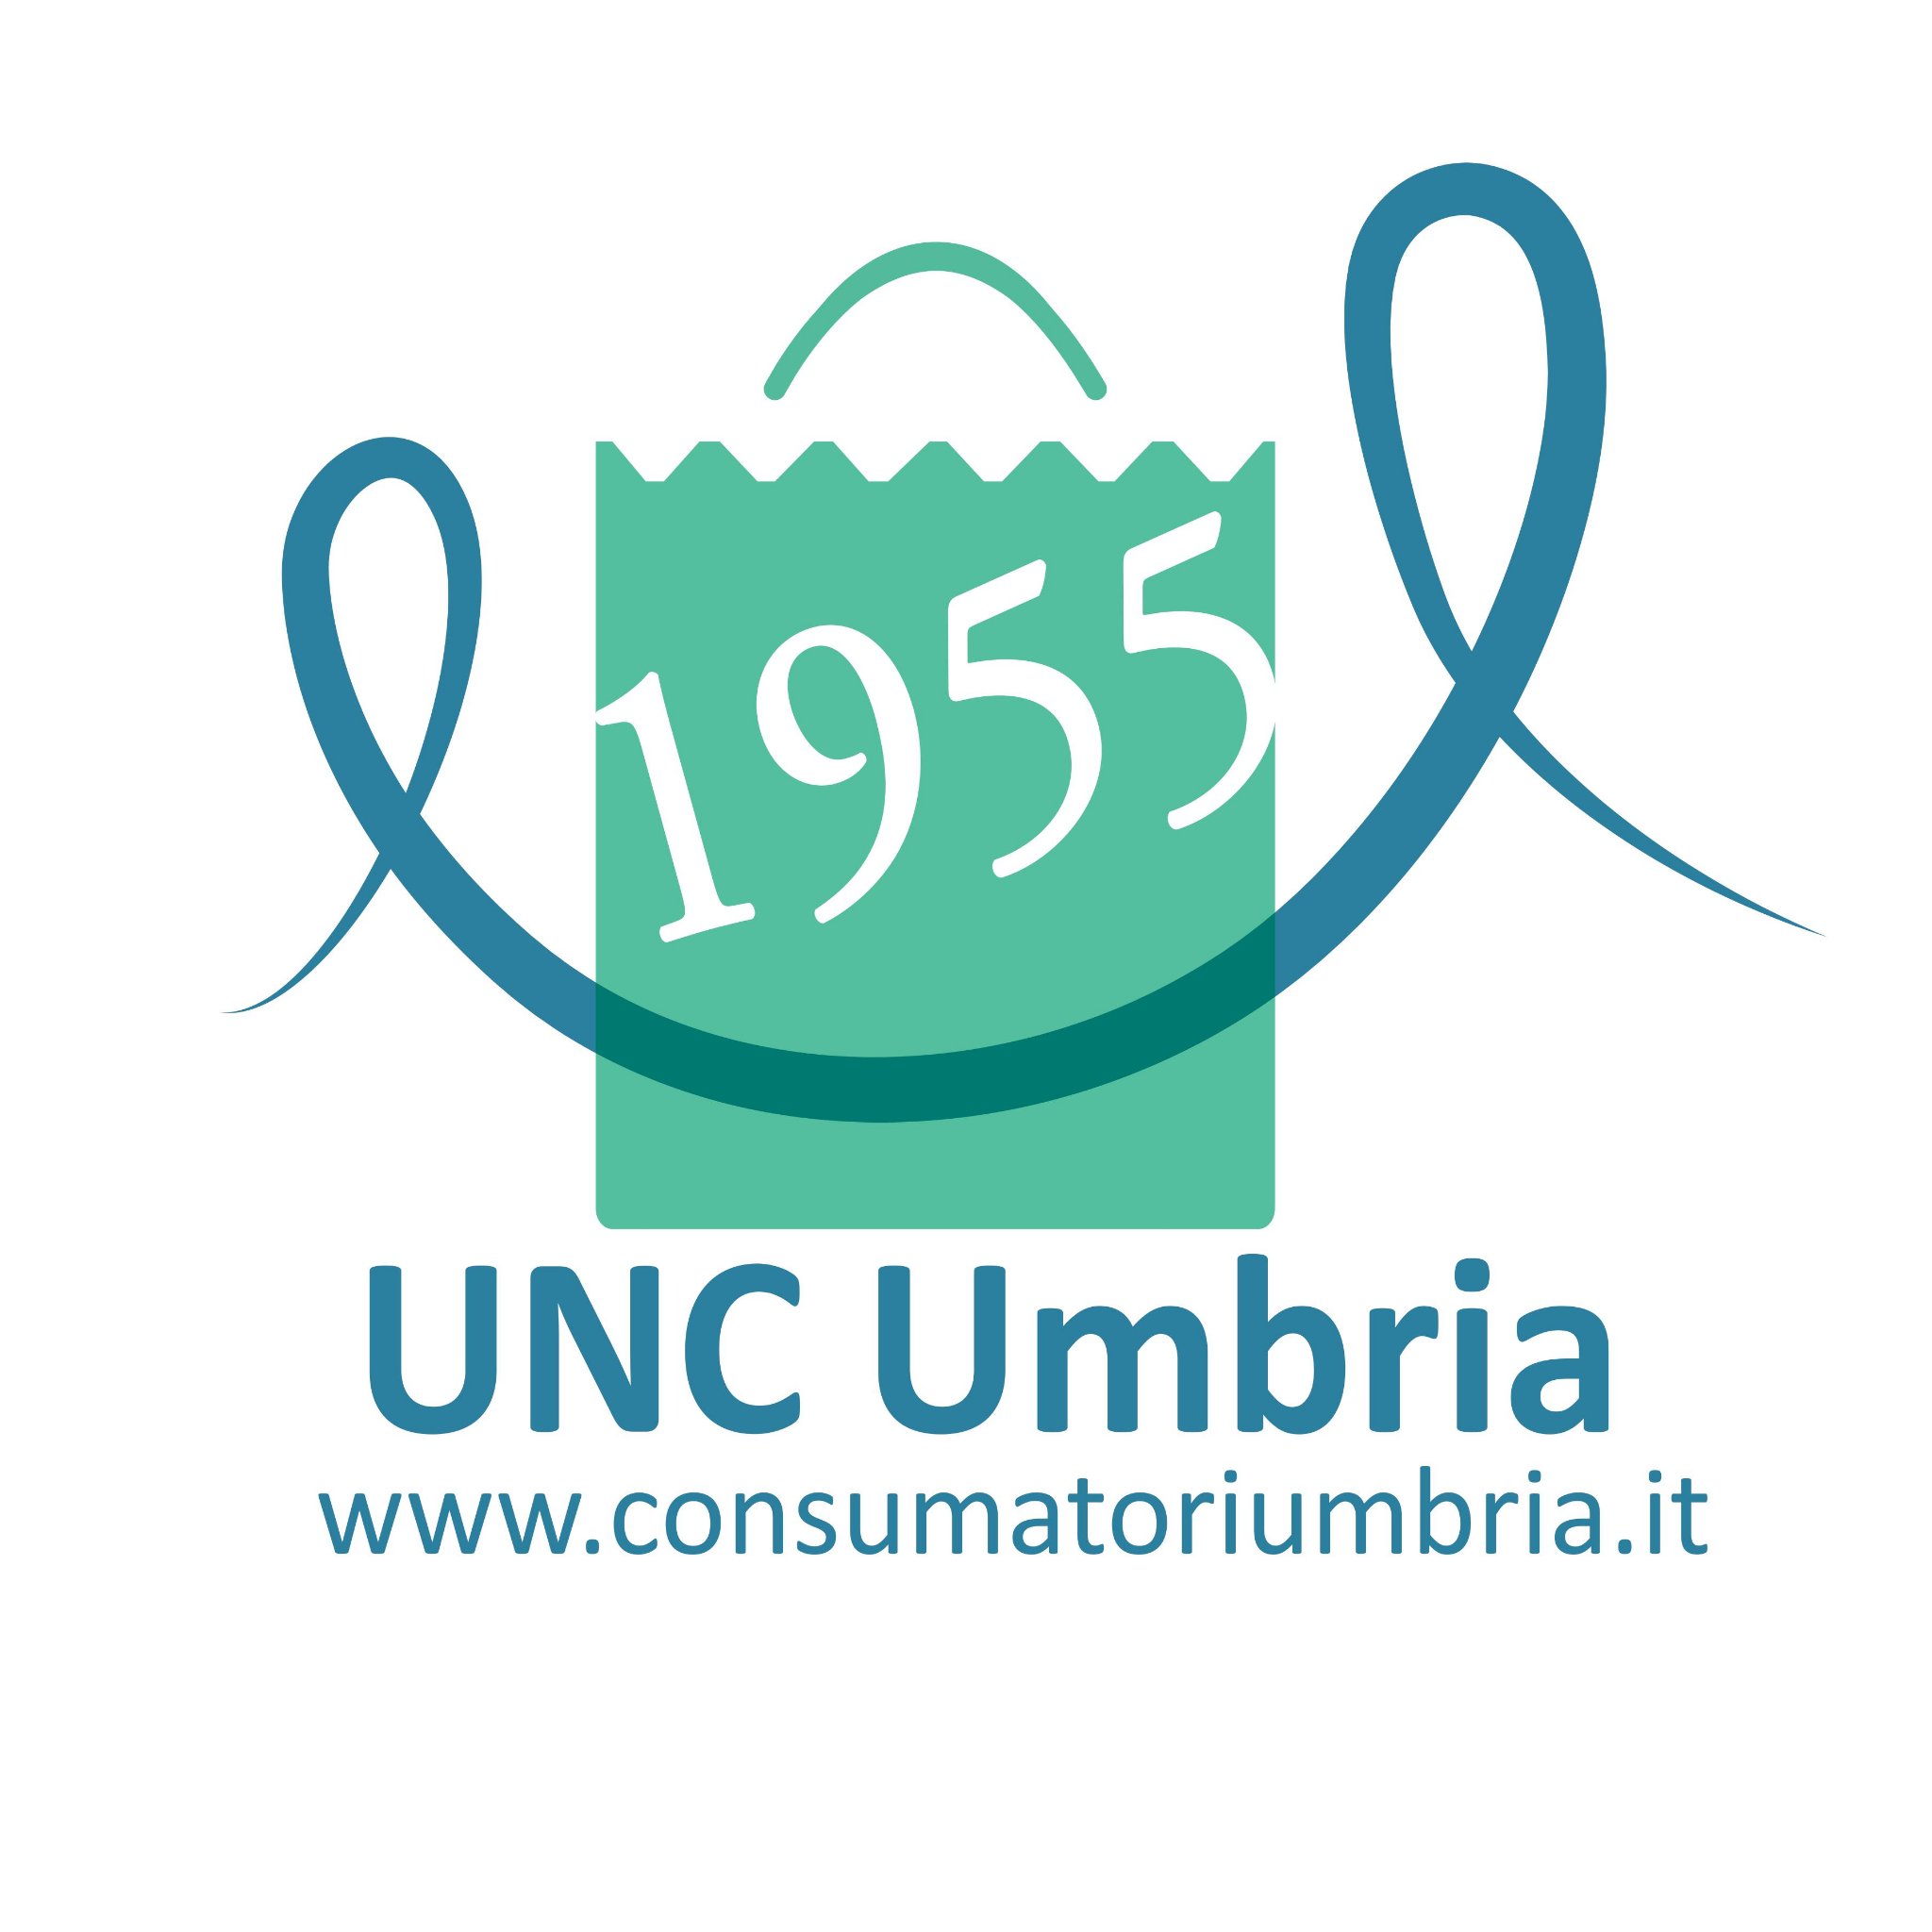 Unc Umbria opera per fornire tutela ai cittadini non solo per questioni legate al consumo ma per tutti i quesiti legali che necessitano di un supporto